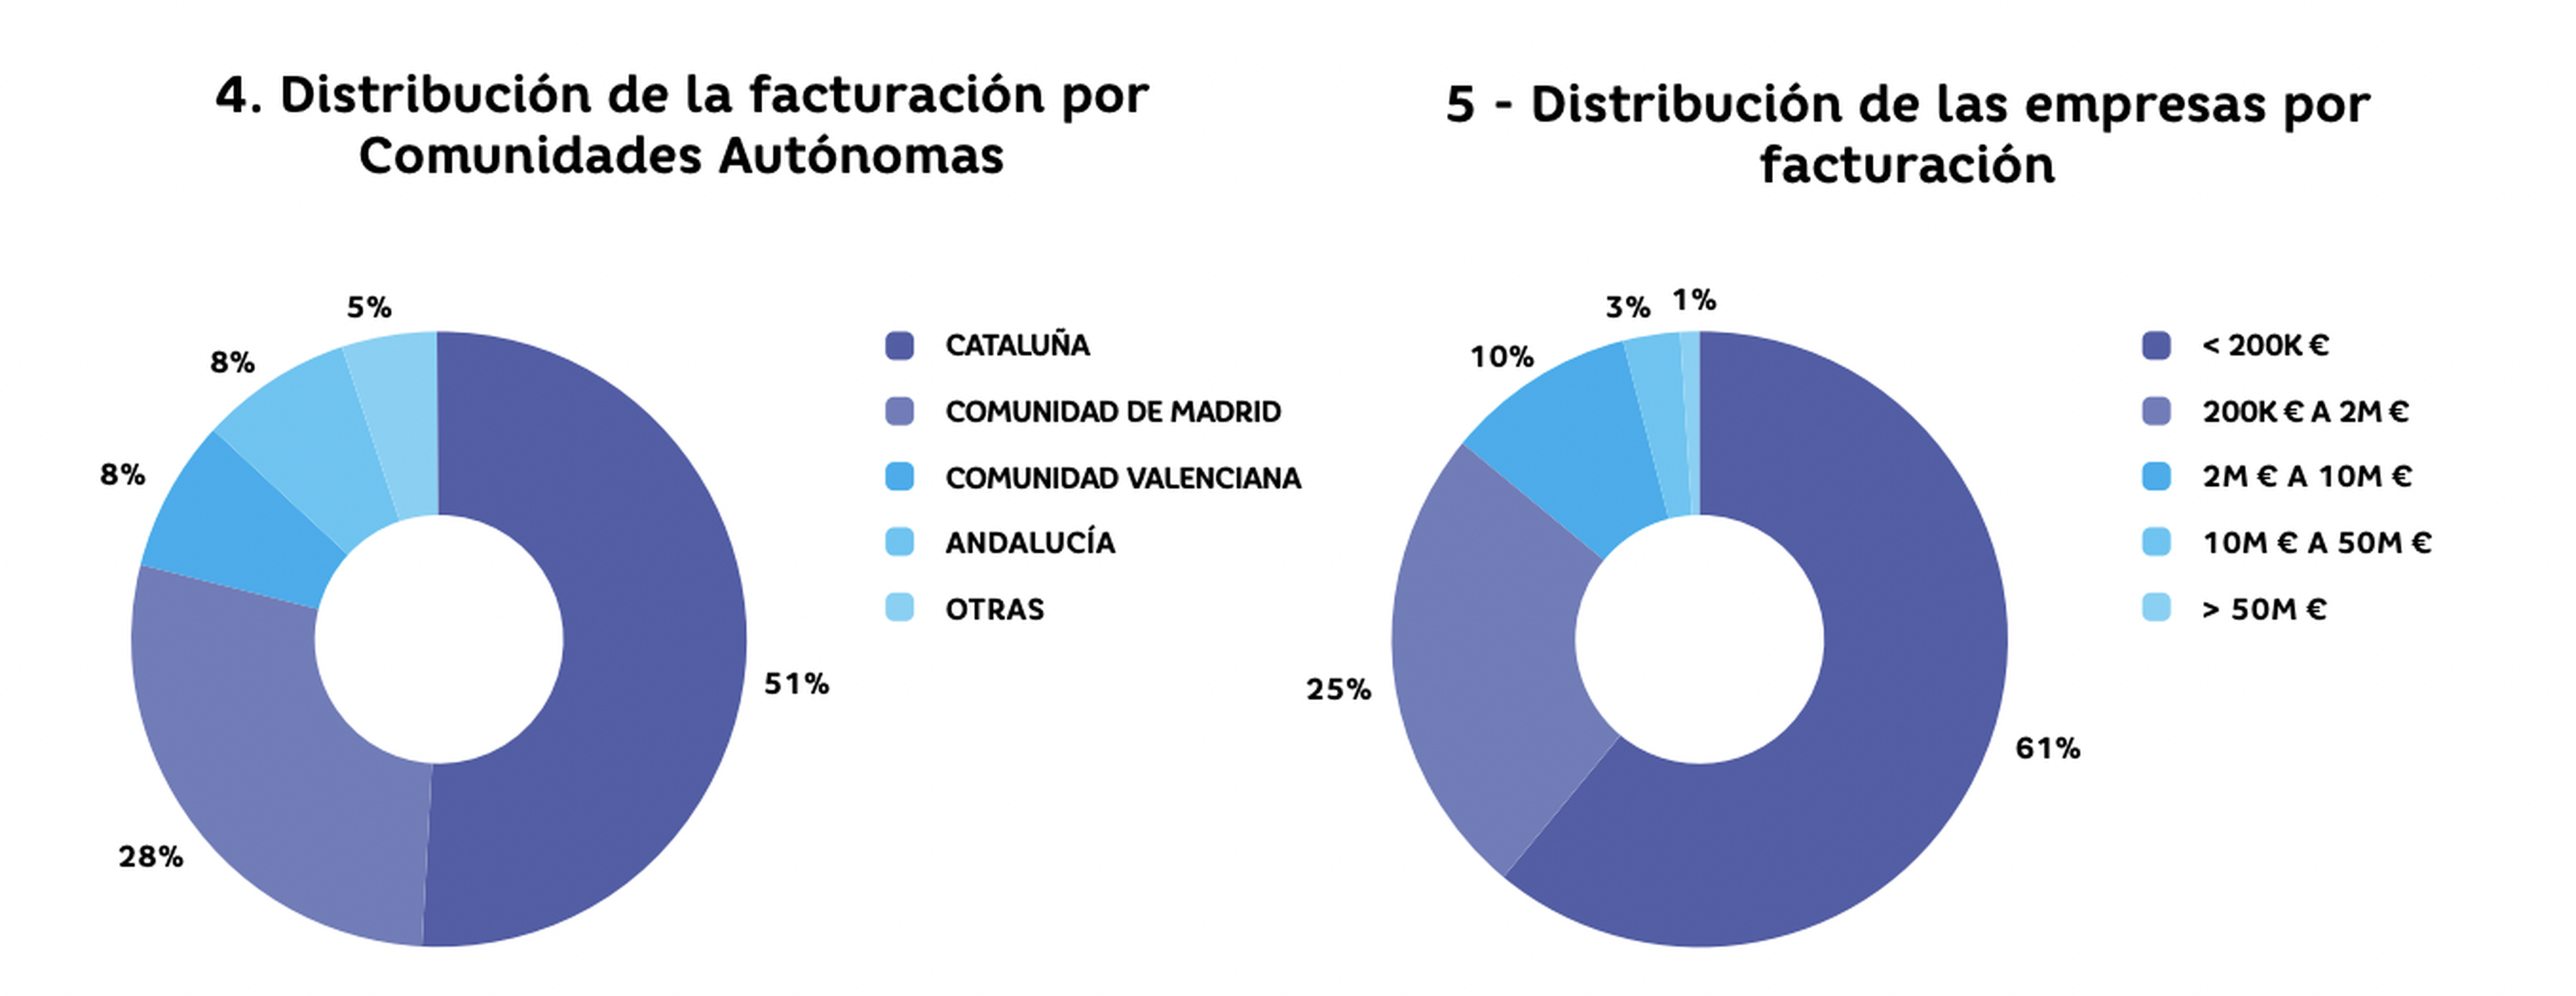 Distribución de la facturación por Comunidades Autónomas.